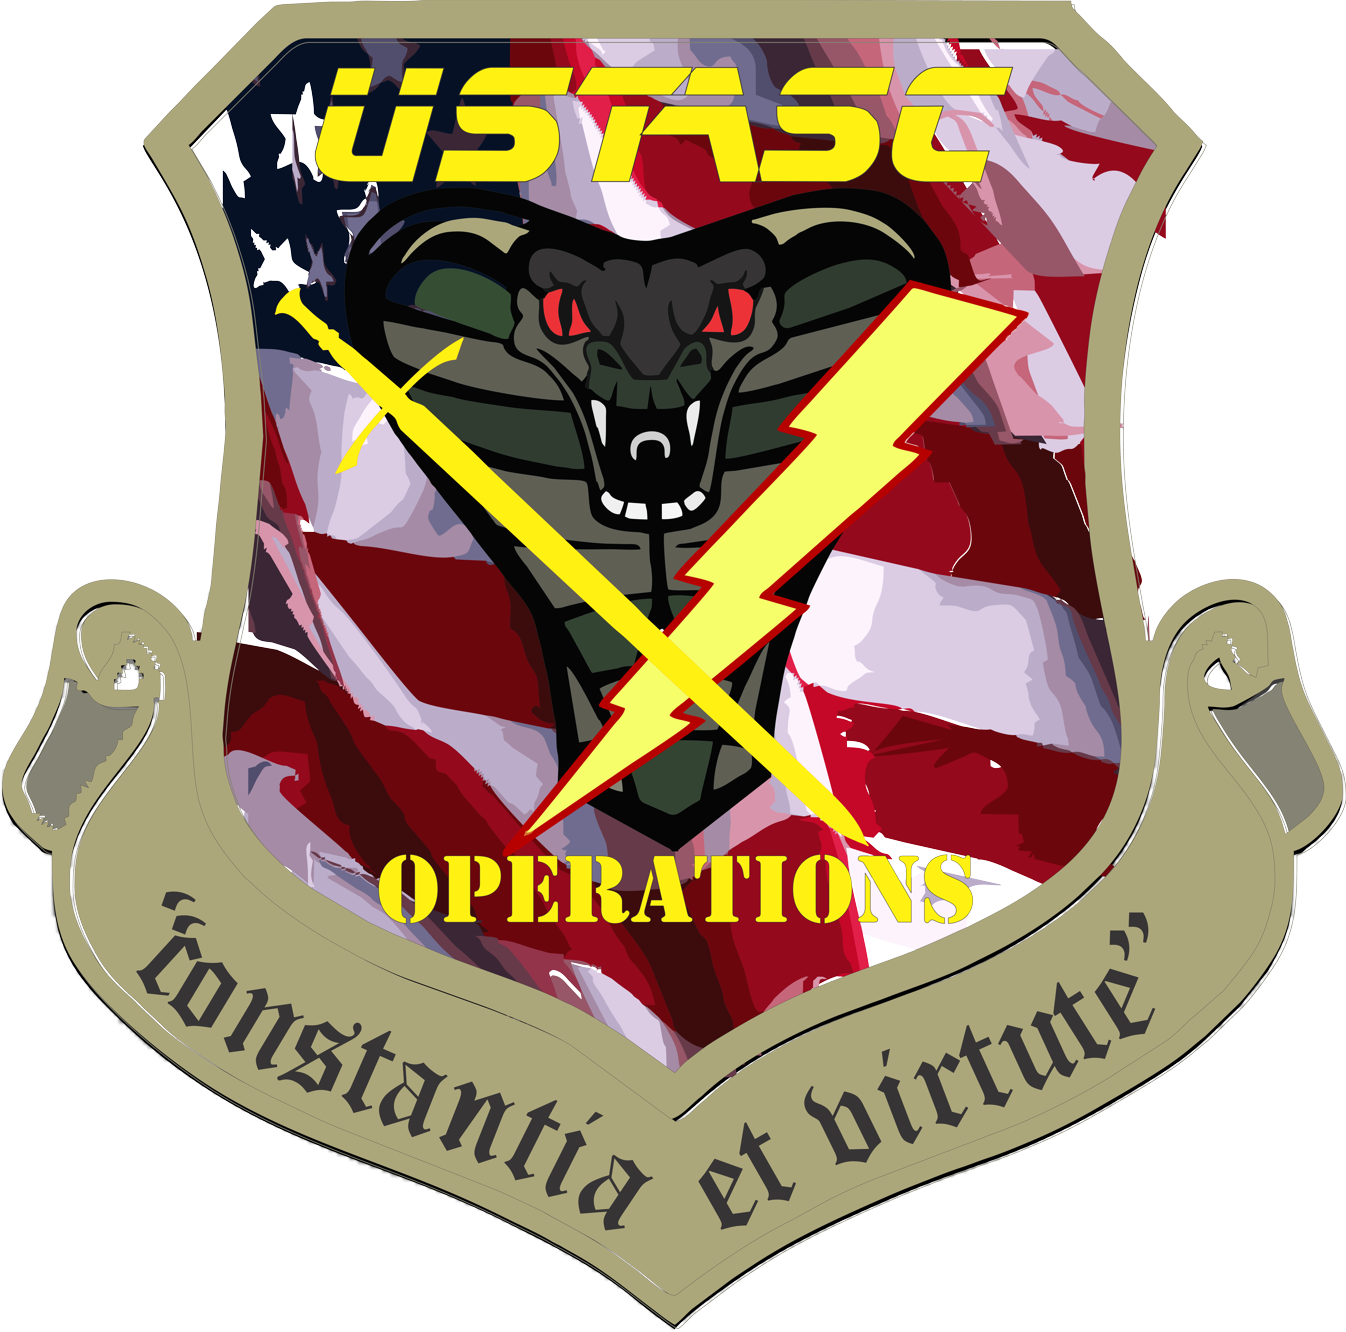 USTASC Deploys Keycafe to Manage Night Patrol Vehicles